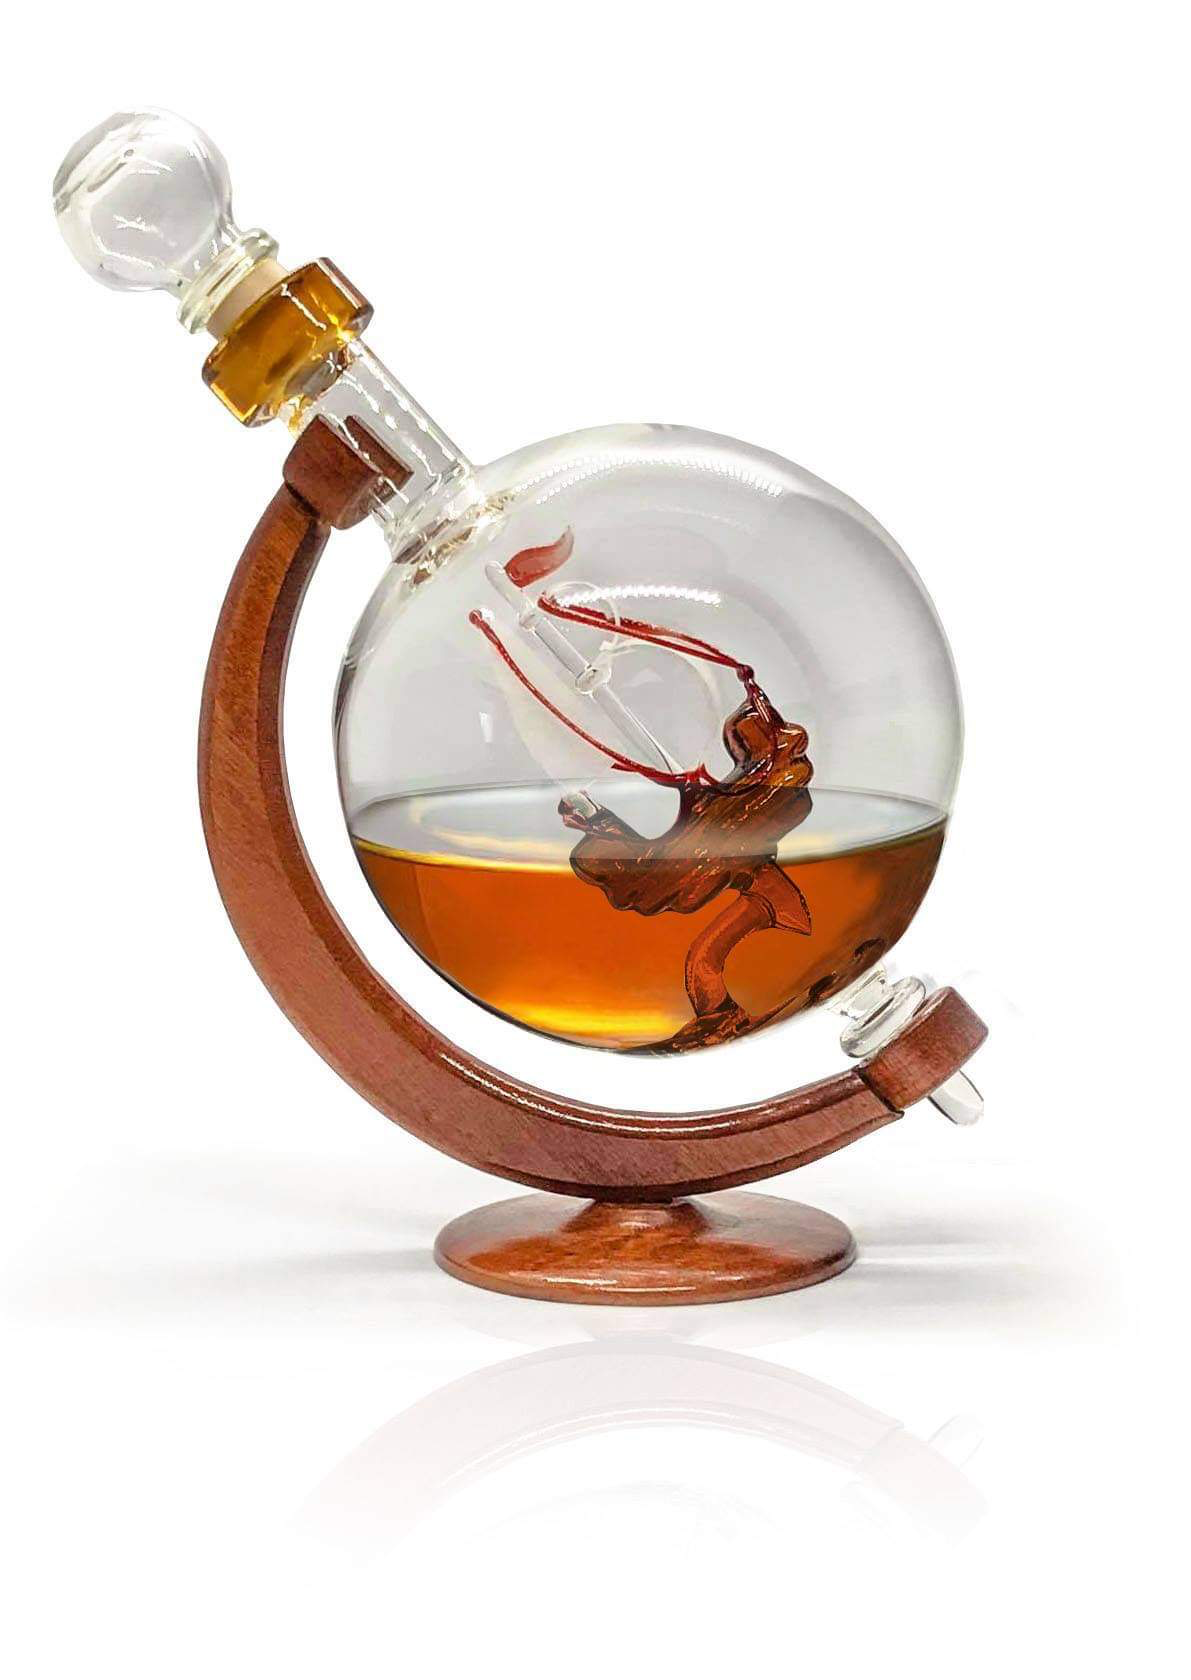 Ship Liquor Decanter - A new way to serve your spirits